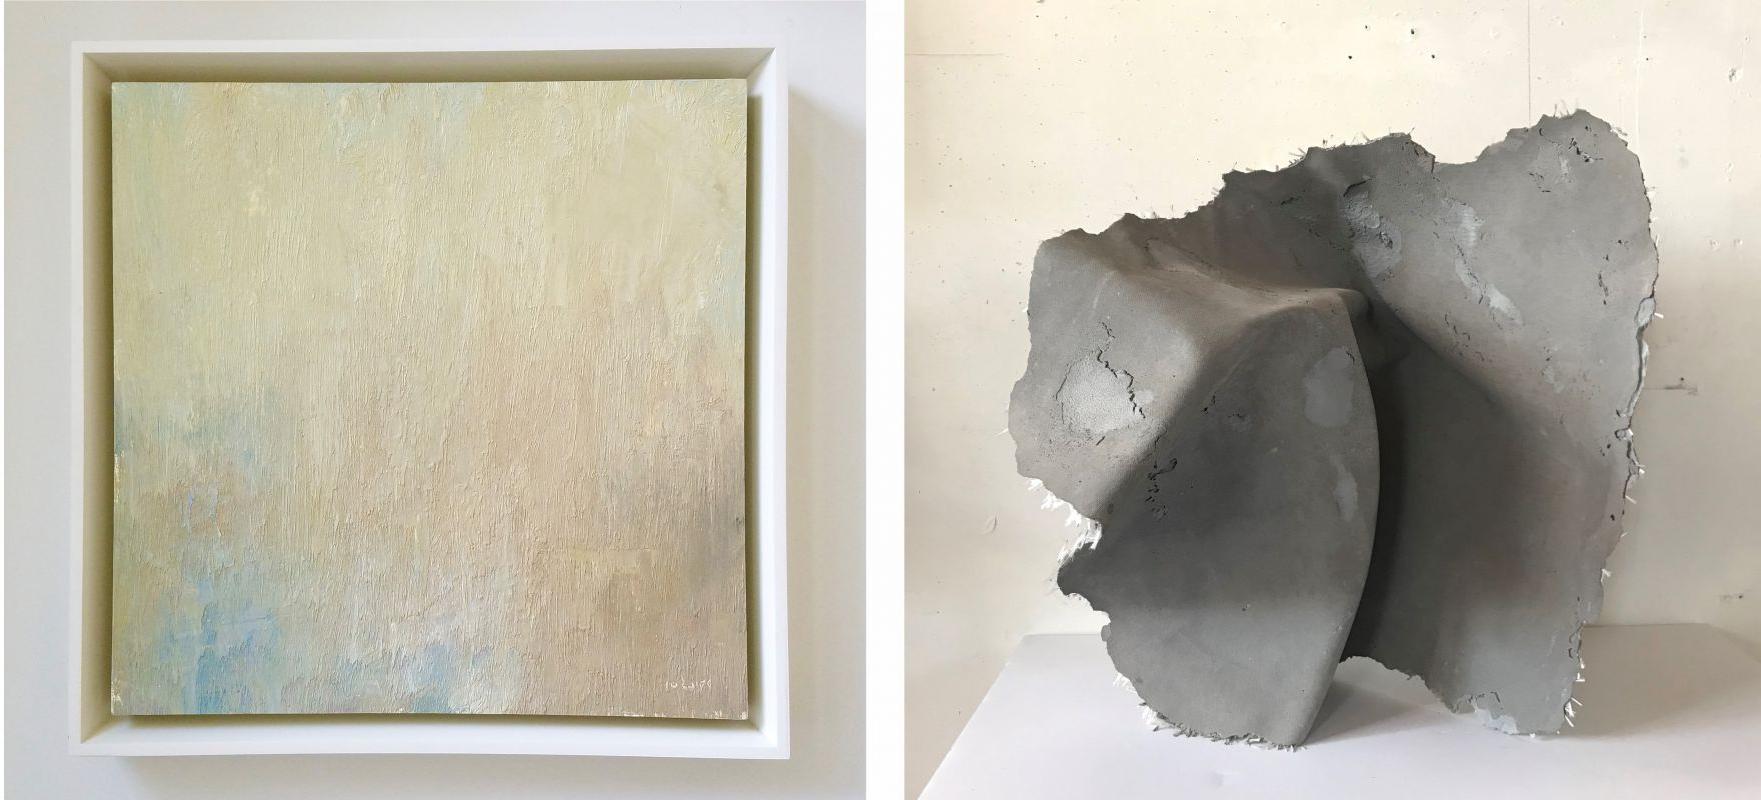 (左)Sarah Thompson Moore (BFA '15), 意图的重要性, 2014, 混凝土和玻璃纤维, 22" x 22" x 16 / (Right) Stuart Shils (Certificate 1982), 悬崖和海湾迷失在夕阳下, 2001, 将油涂在准备好的纸上，涂在面板上, 13" x 13"